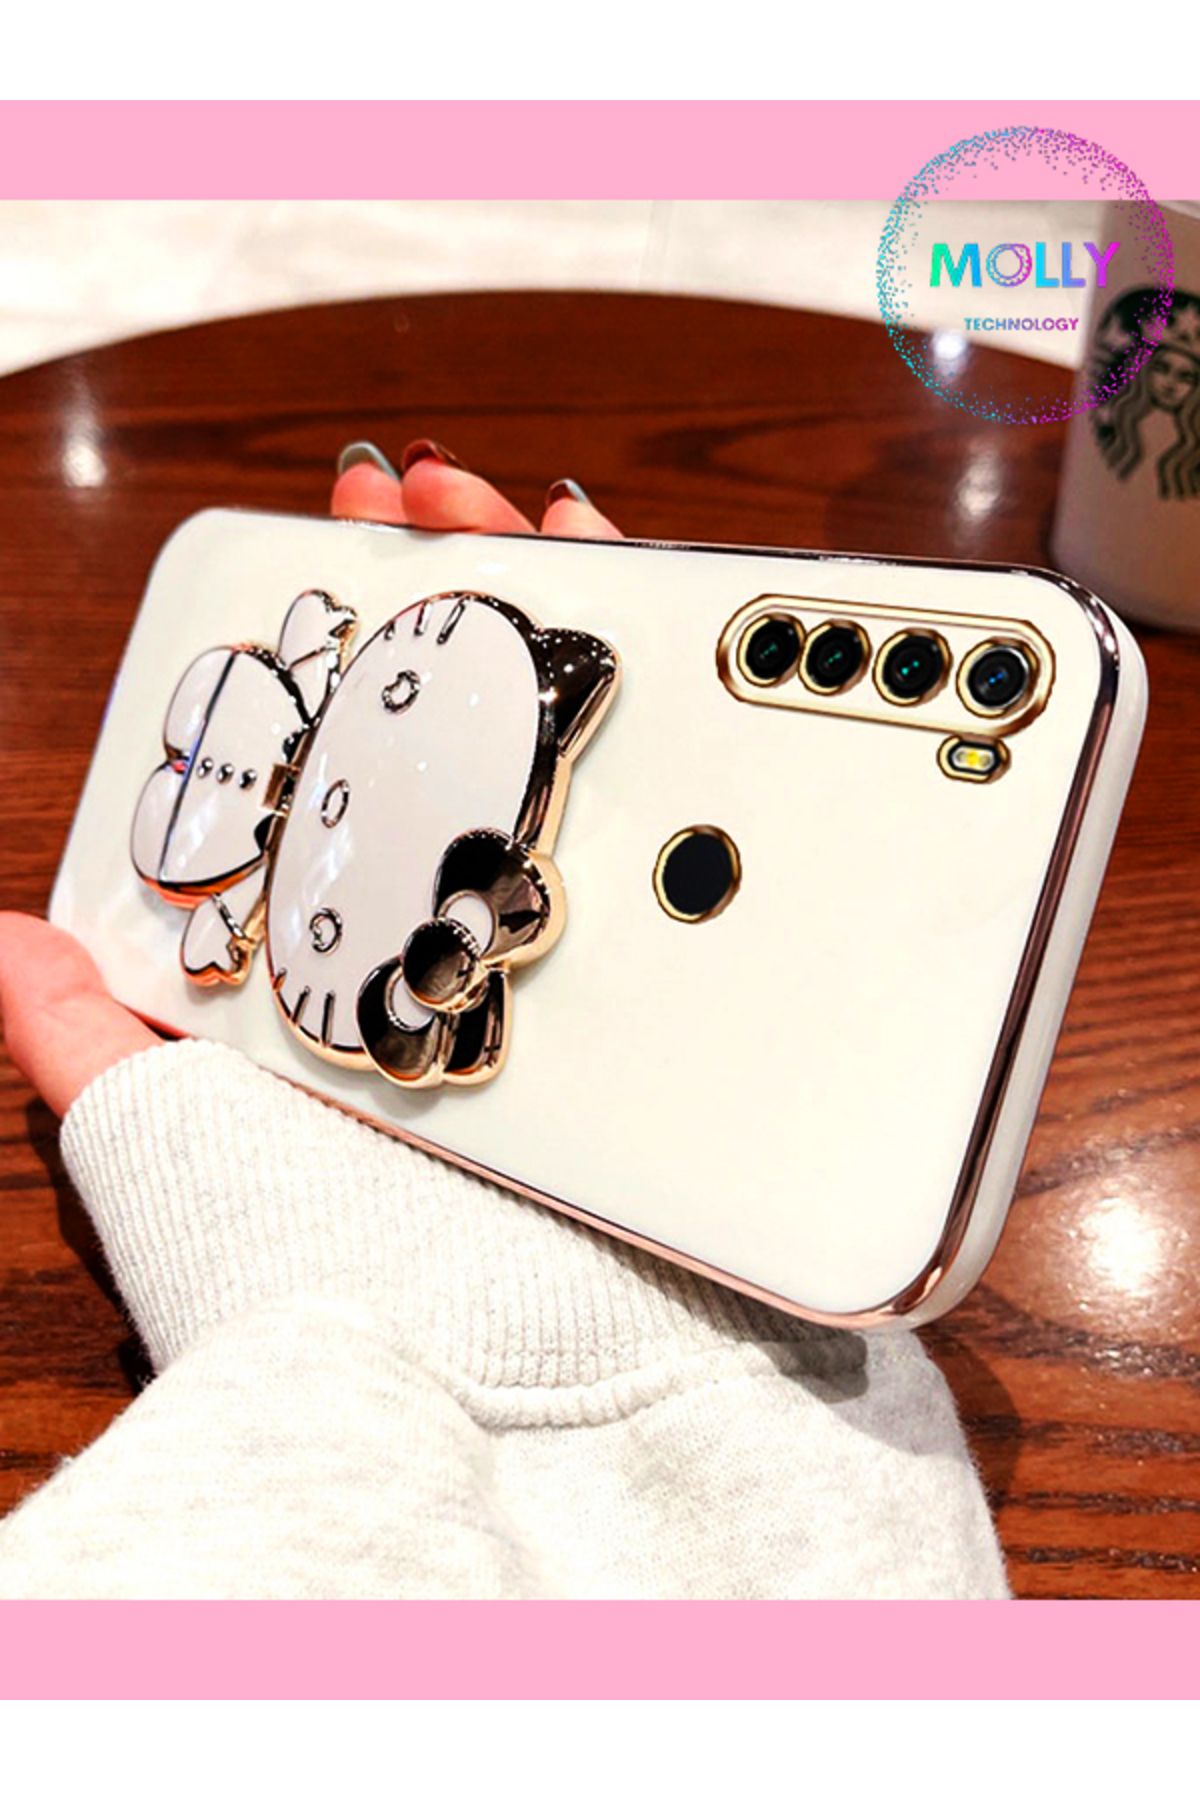 Molly Xiaomi Redmi Note 8 İçin İnci Beyazı Hello Kitty Standlı Kenarları Gold Detaylı Lüks Silikon Kılıf